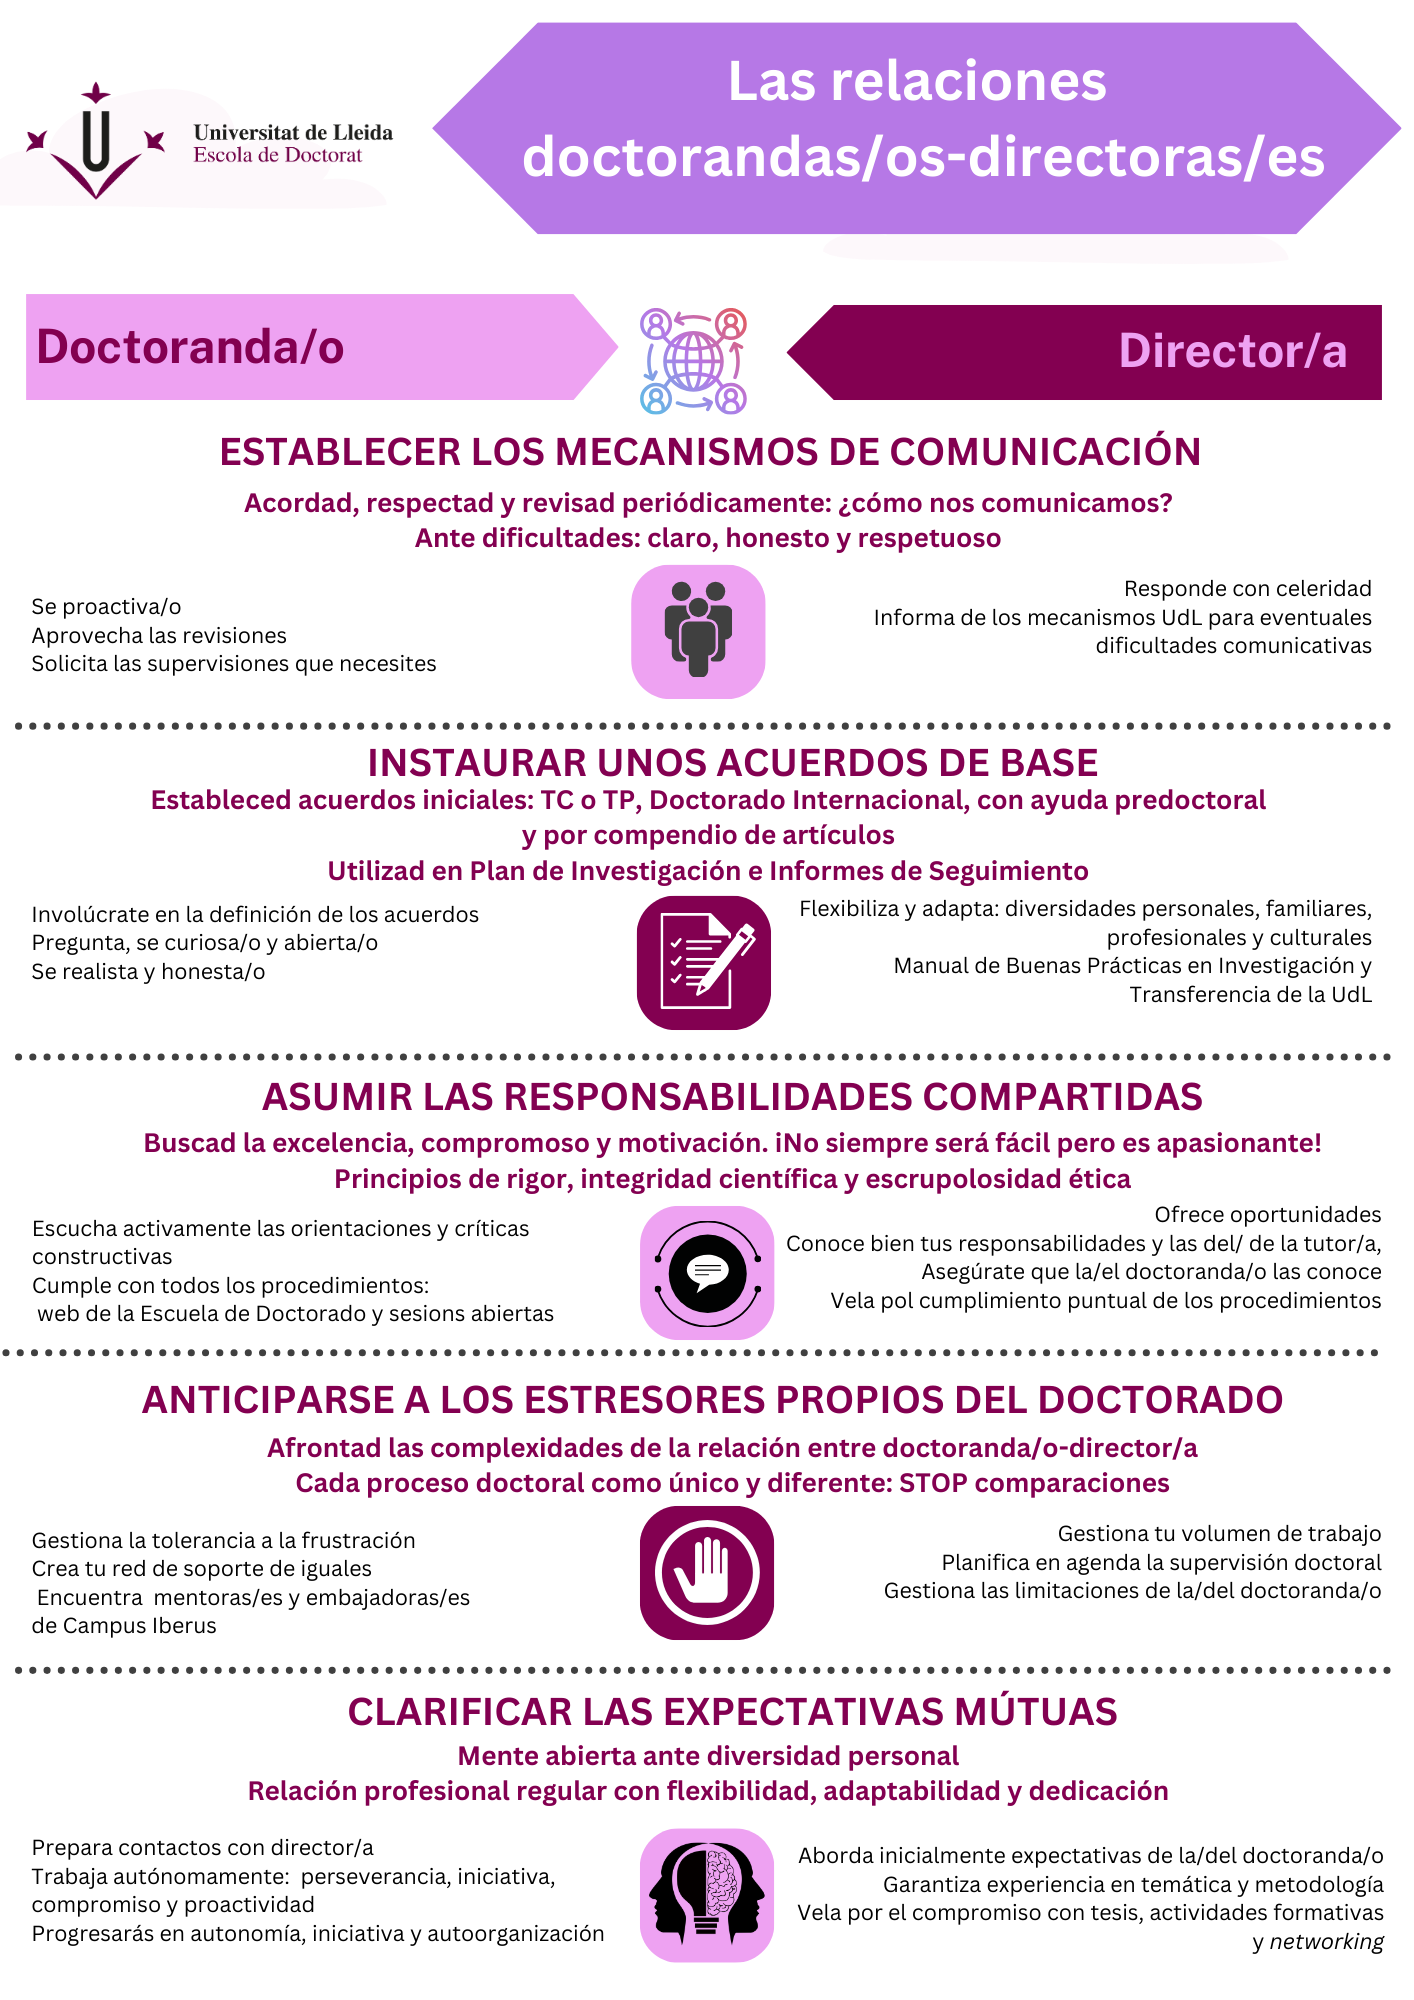 Infografía "Relaciones doctorandas/os - directoras/es"